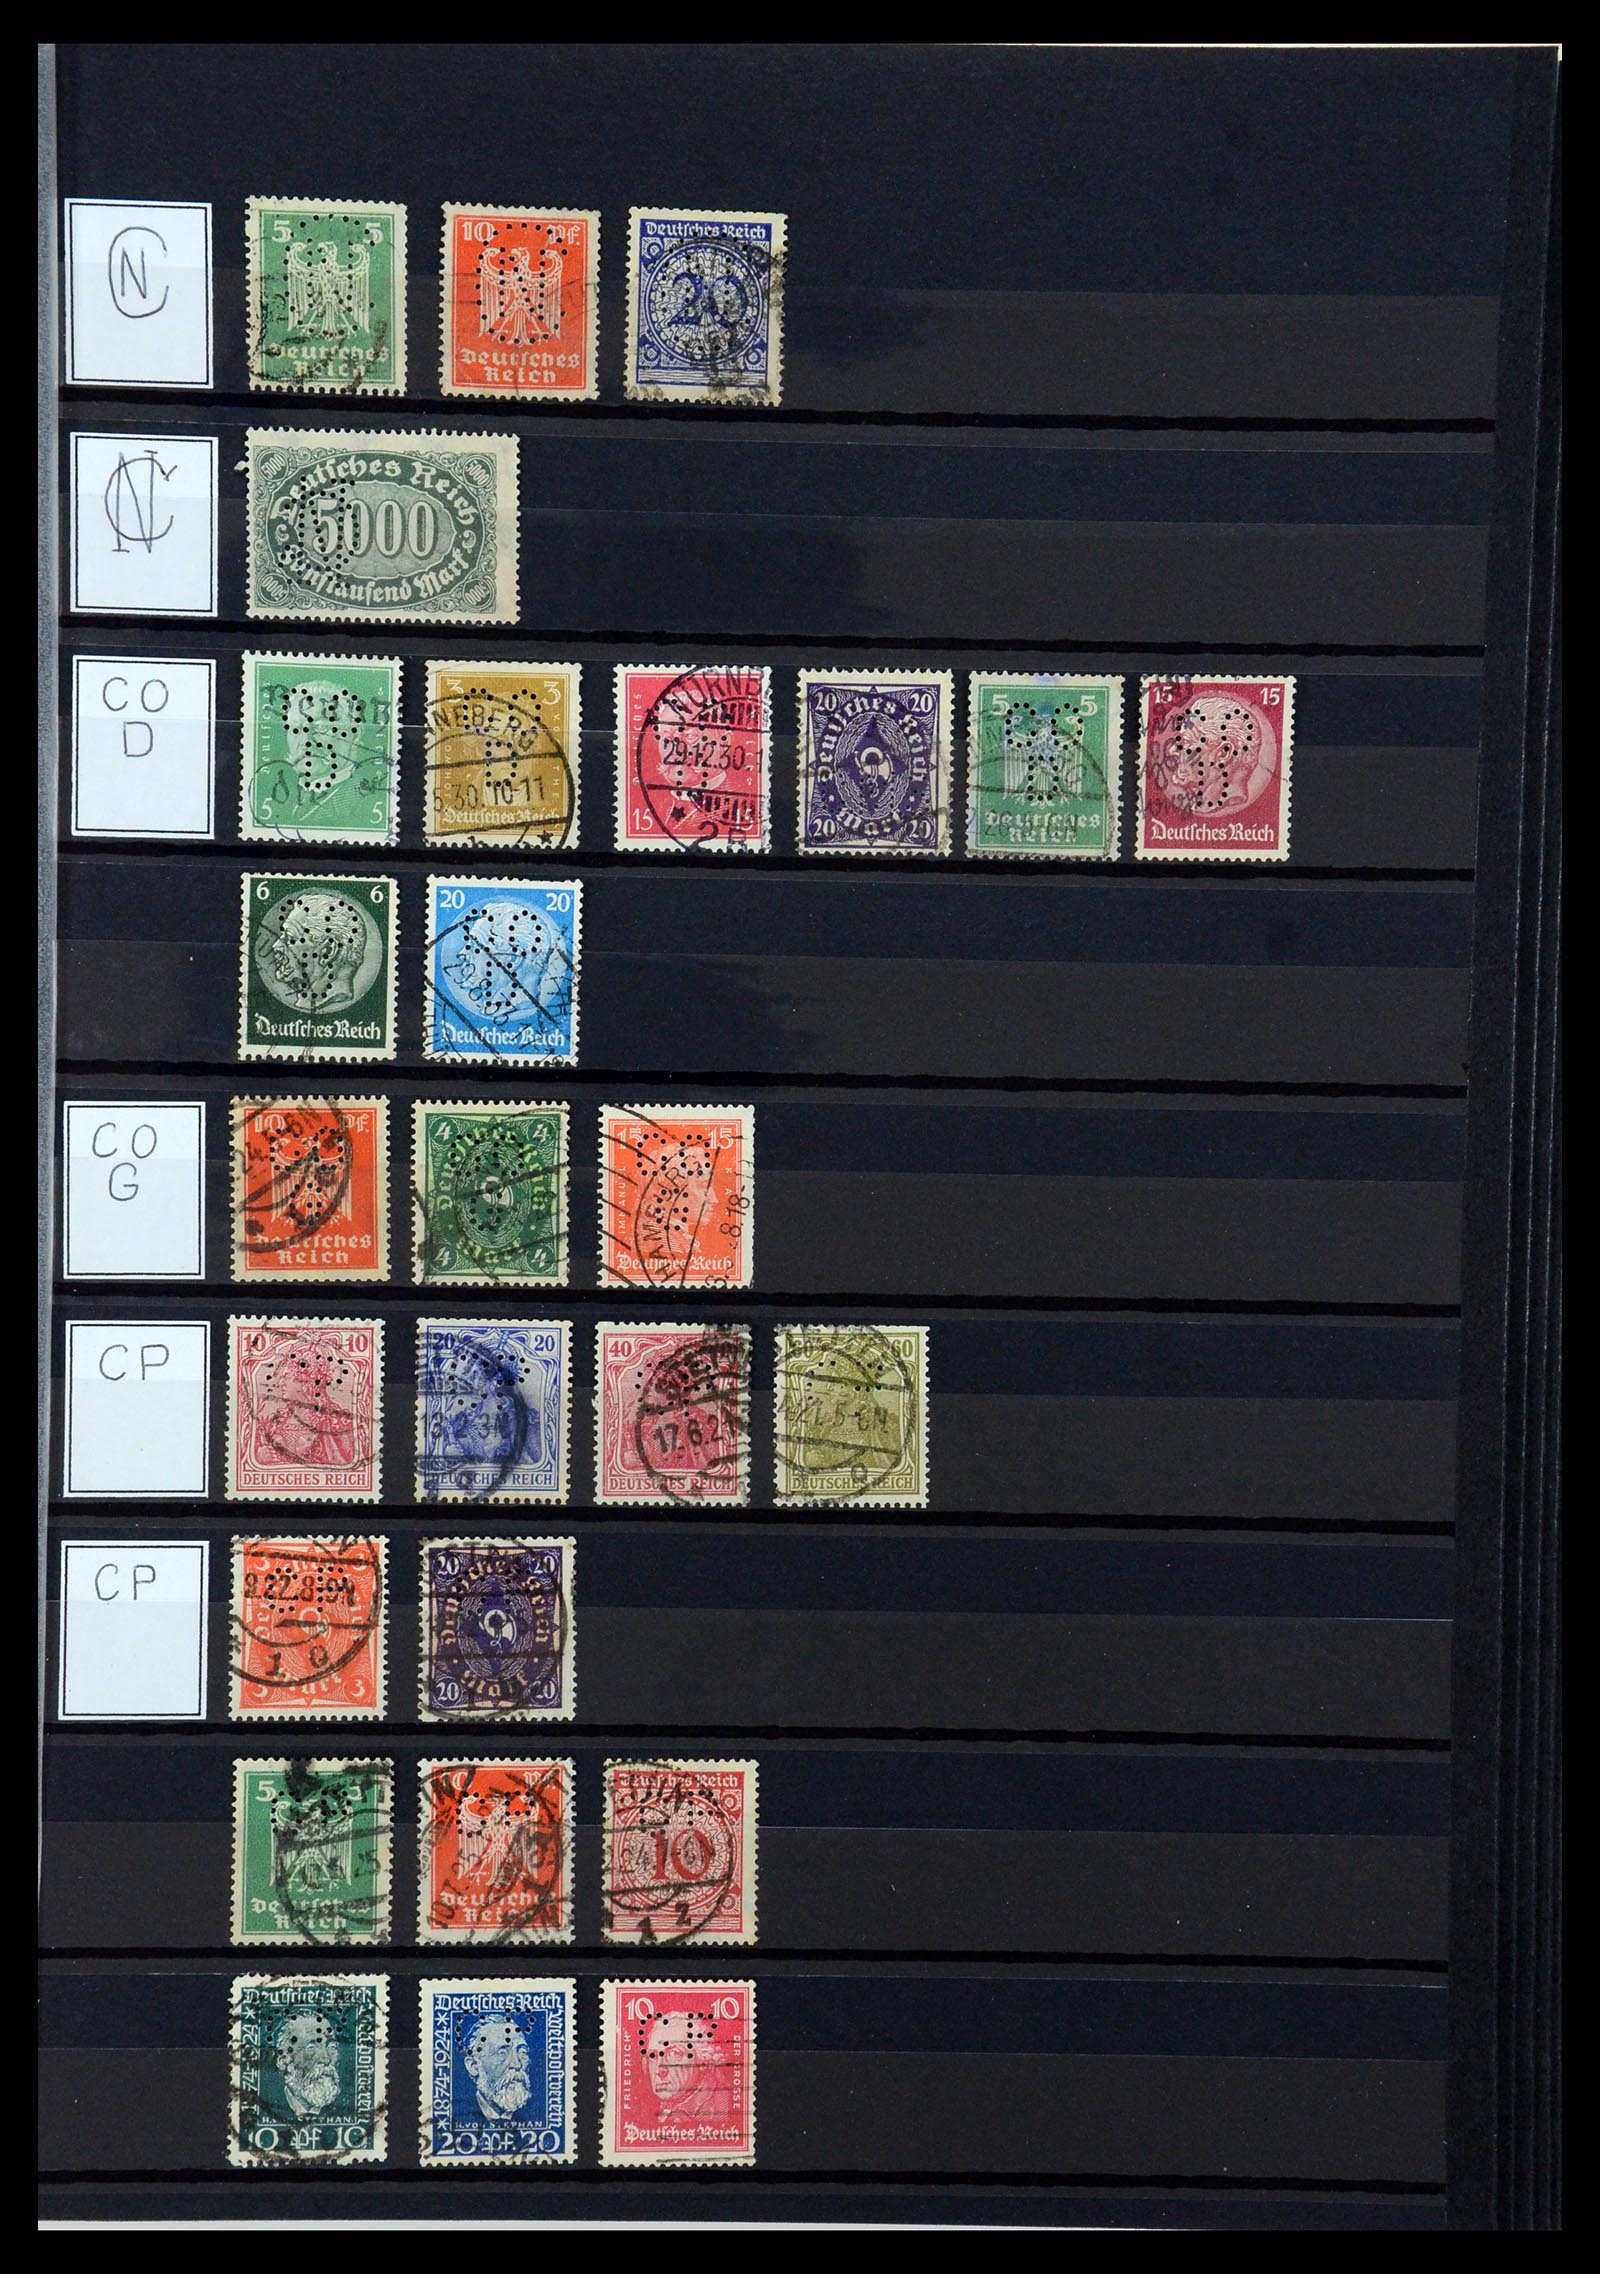 36405 077 - Stamp collection 36405 German Reich perfins 1880-1945.